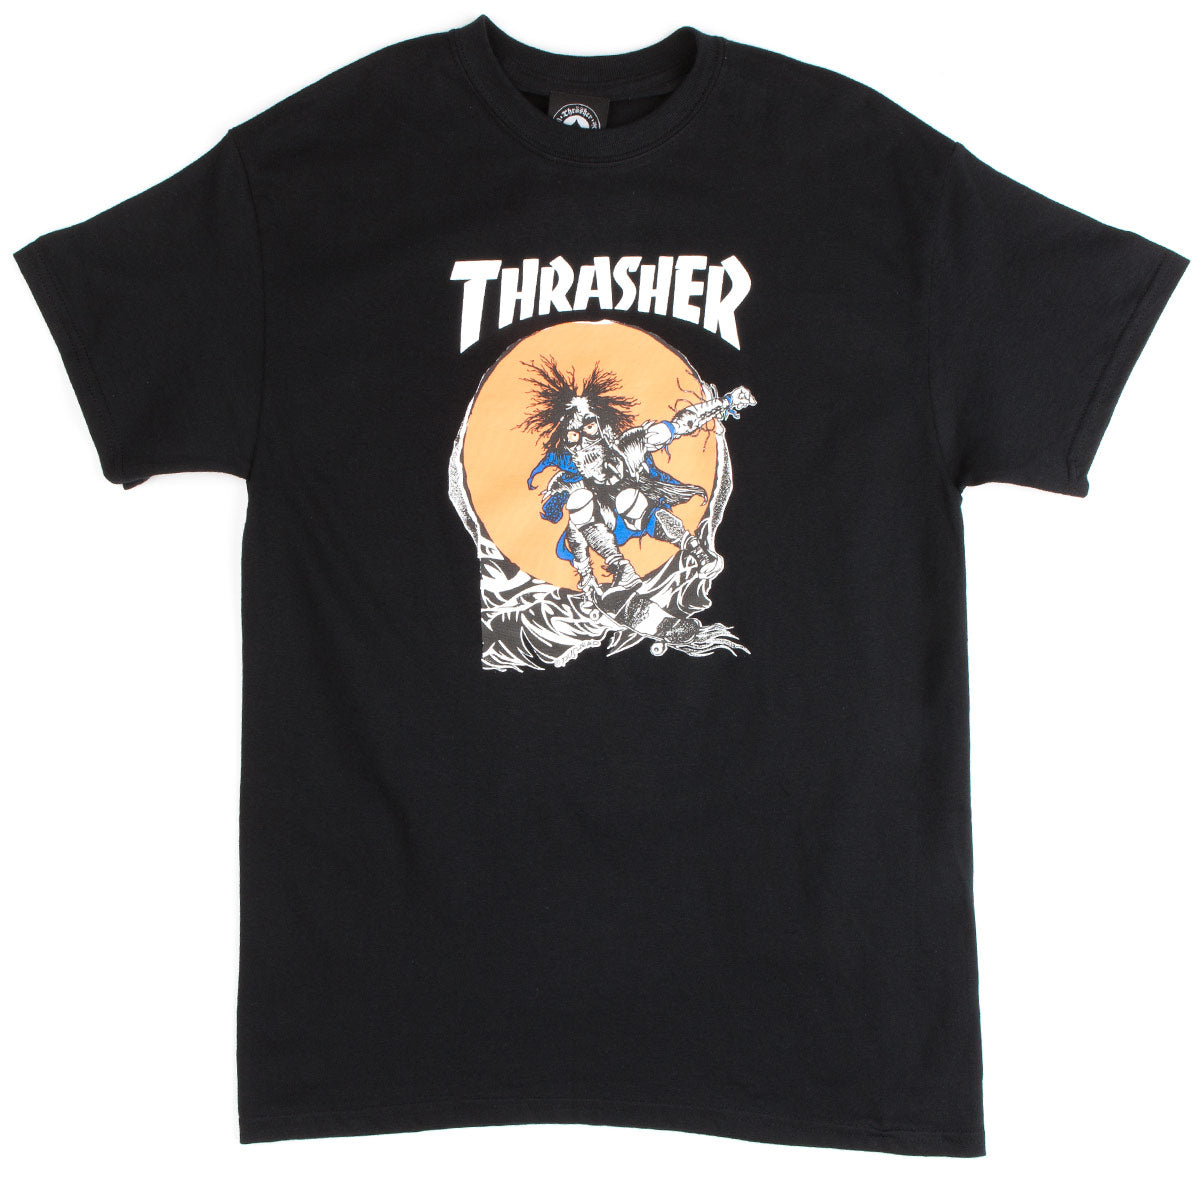 Thrasher Skate Outlaw T-Shirt - Black image 1